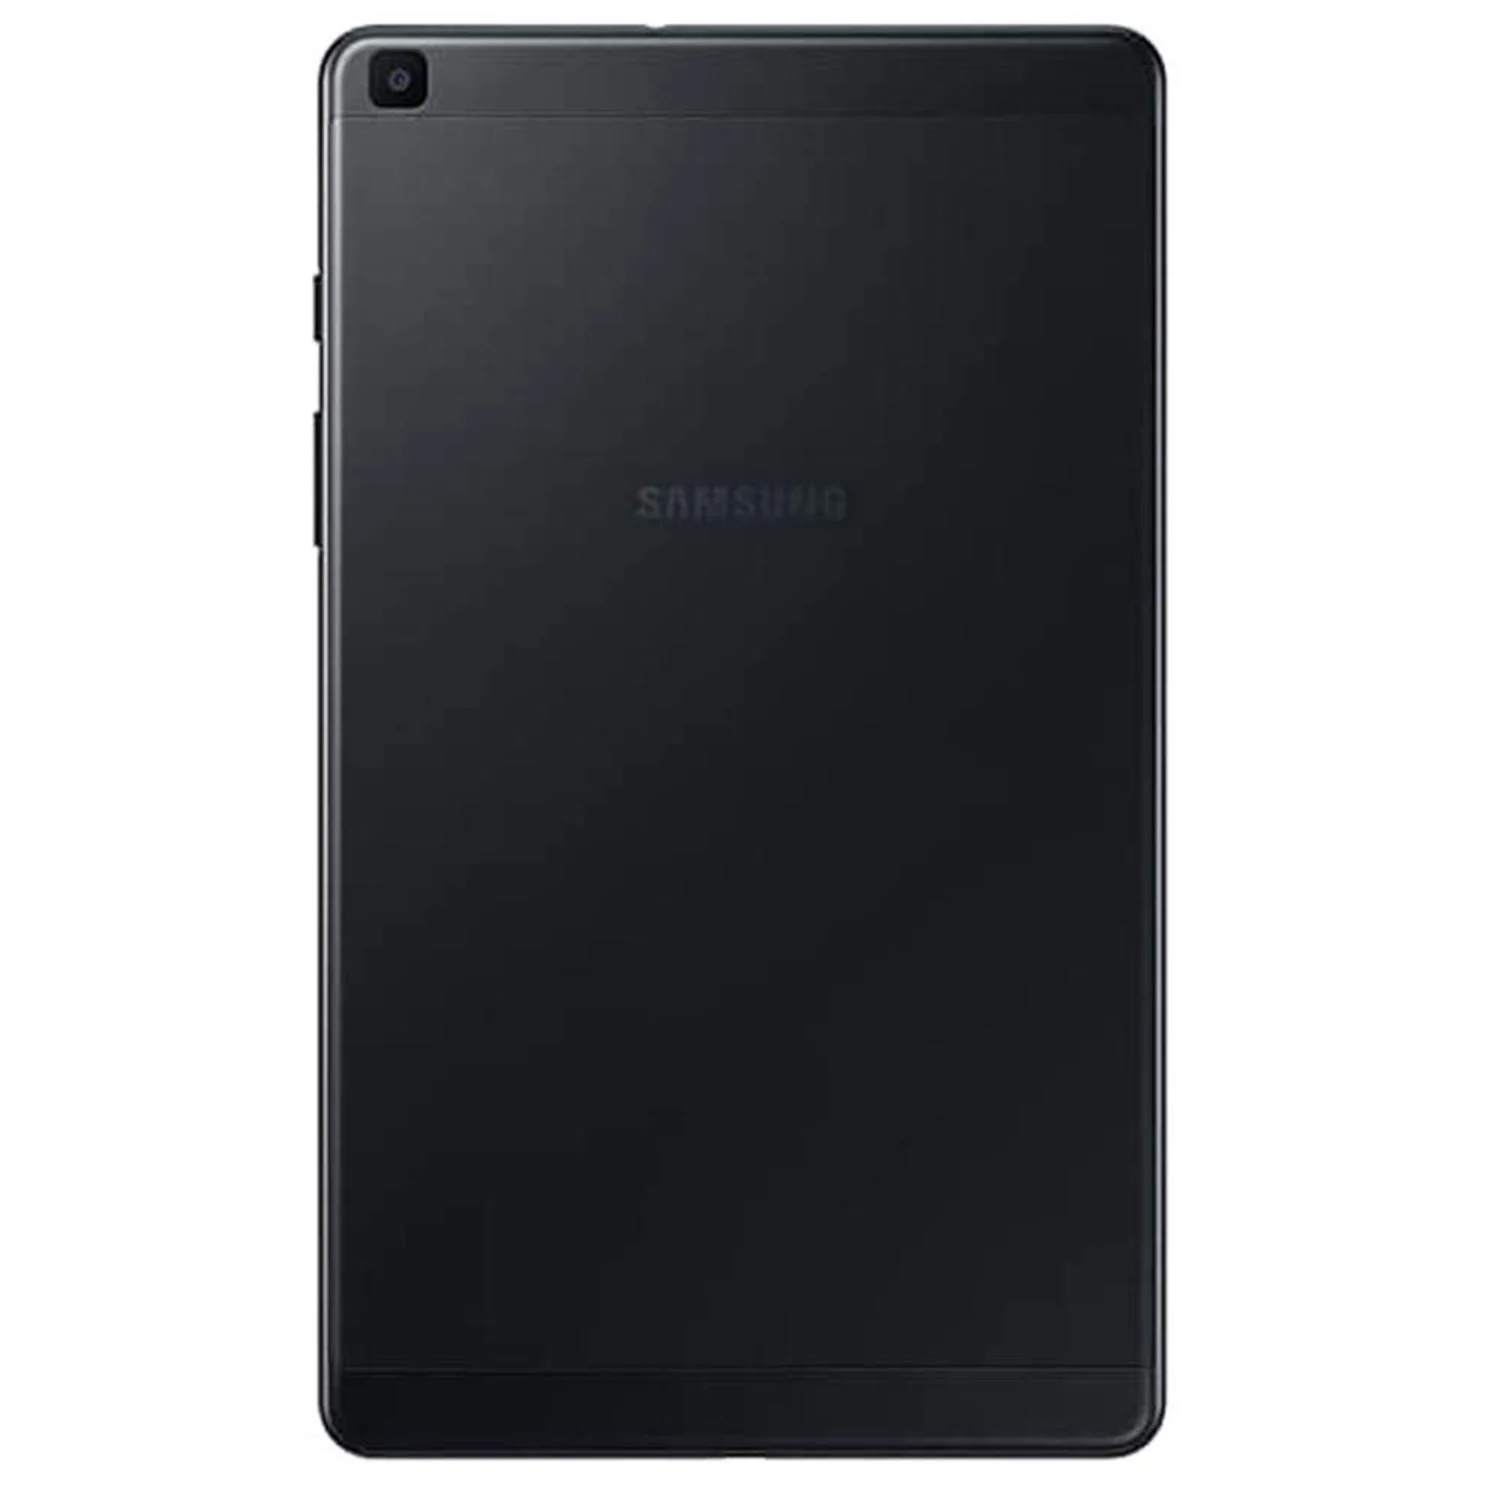 Tablet Samsung Tab A SM-T295 32GB / 2GB RAM / 4G LTE / Single Sim / Tela 8" / Câmeras 8MP e 2MP - Preto